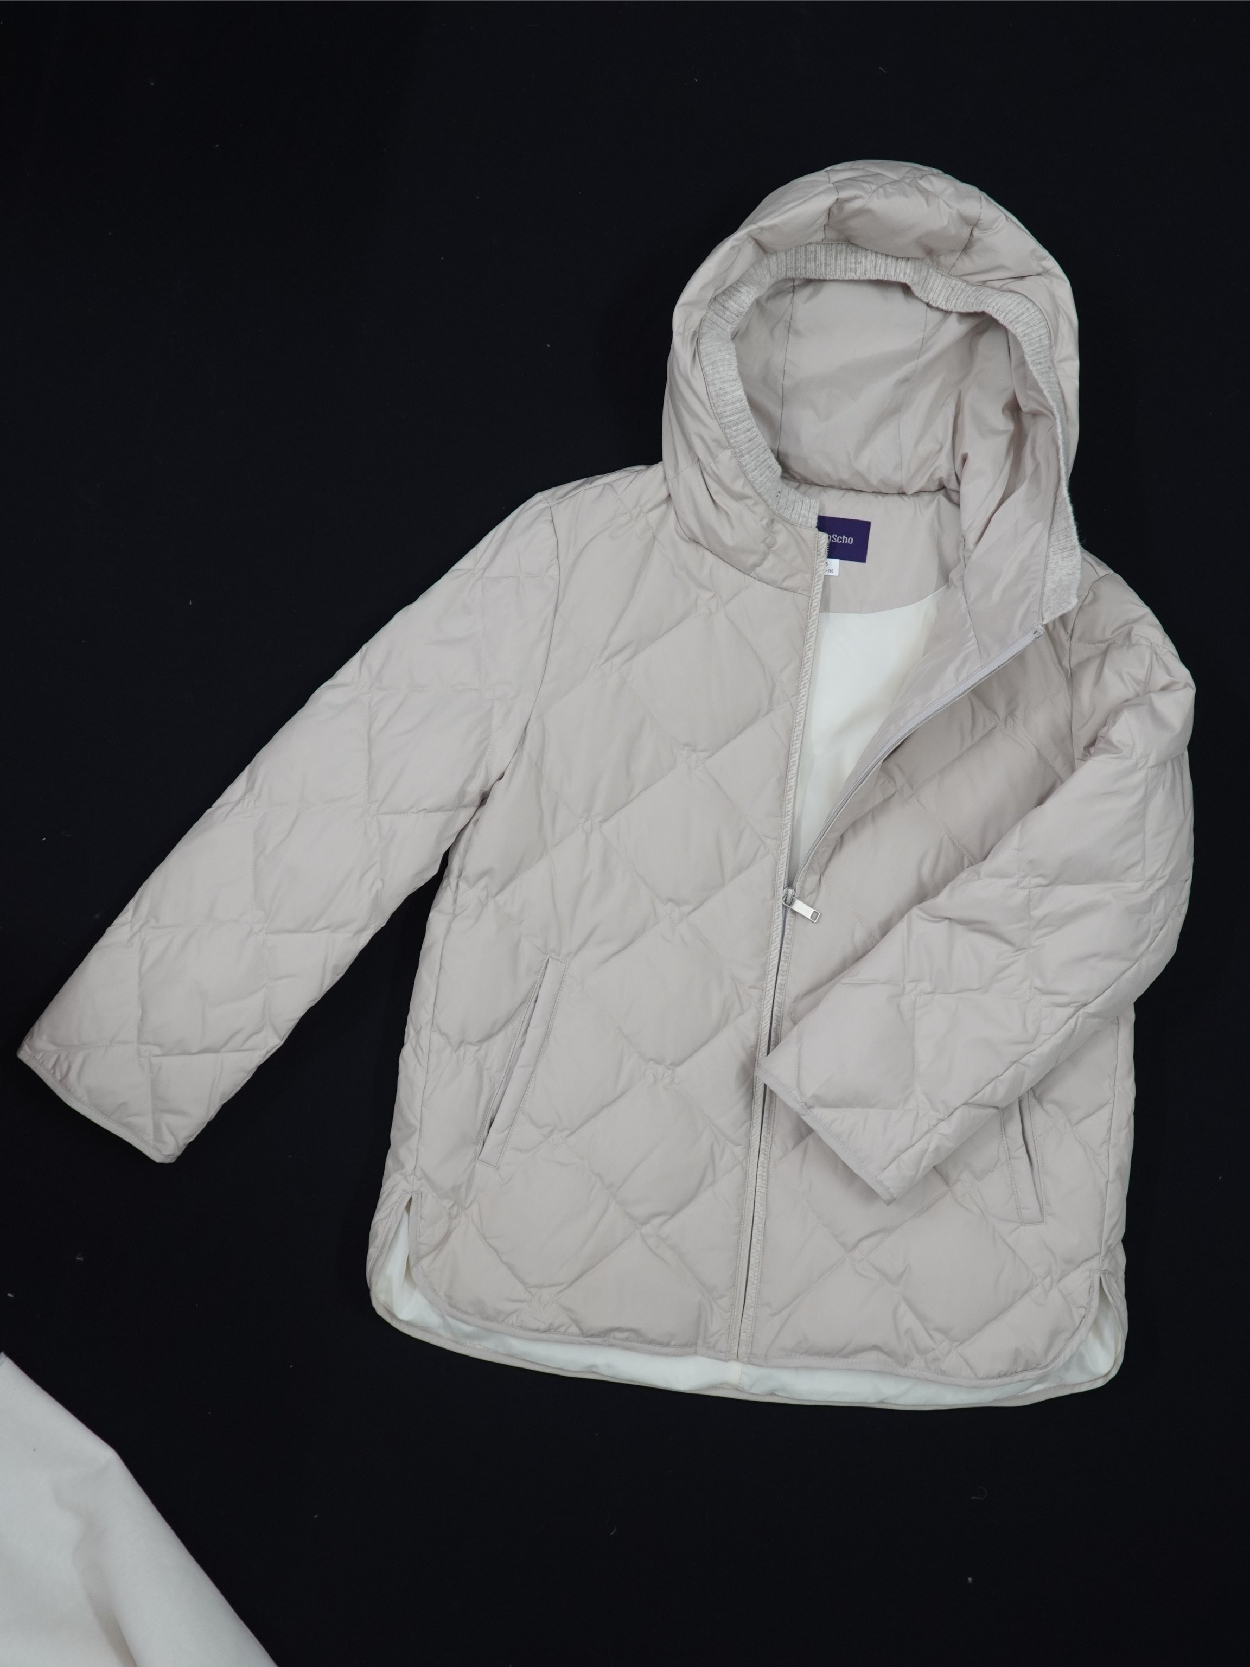 Tham khảo ngay 6 mẫu áo khoác để nàng tha hồ xúng xính mùa đông năm nay -  Vshirt - Thời trang ngoại cỡ